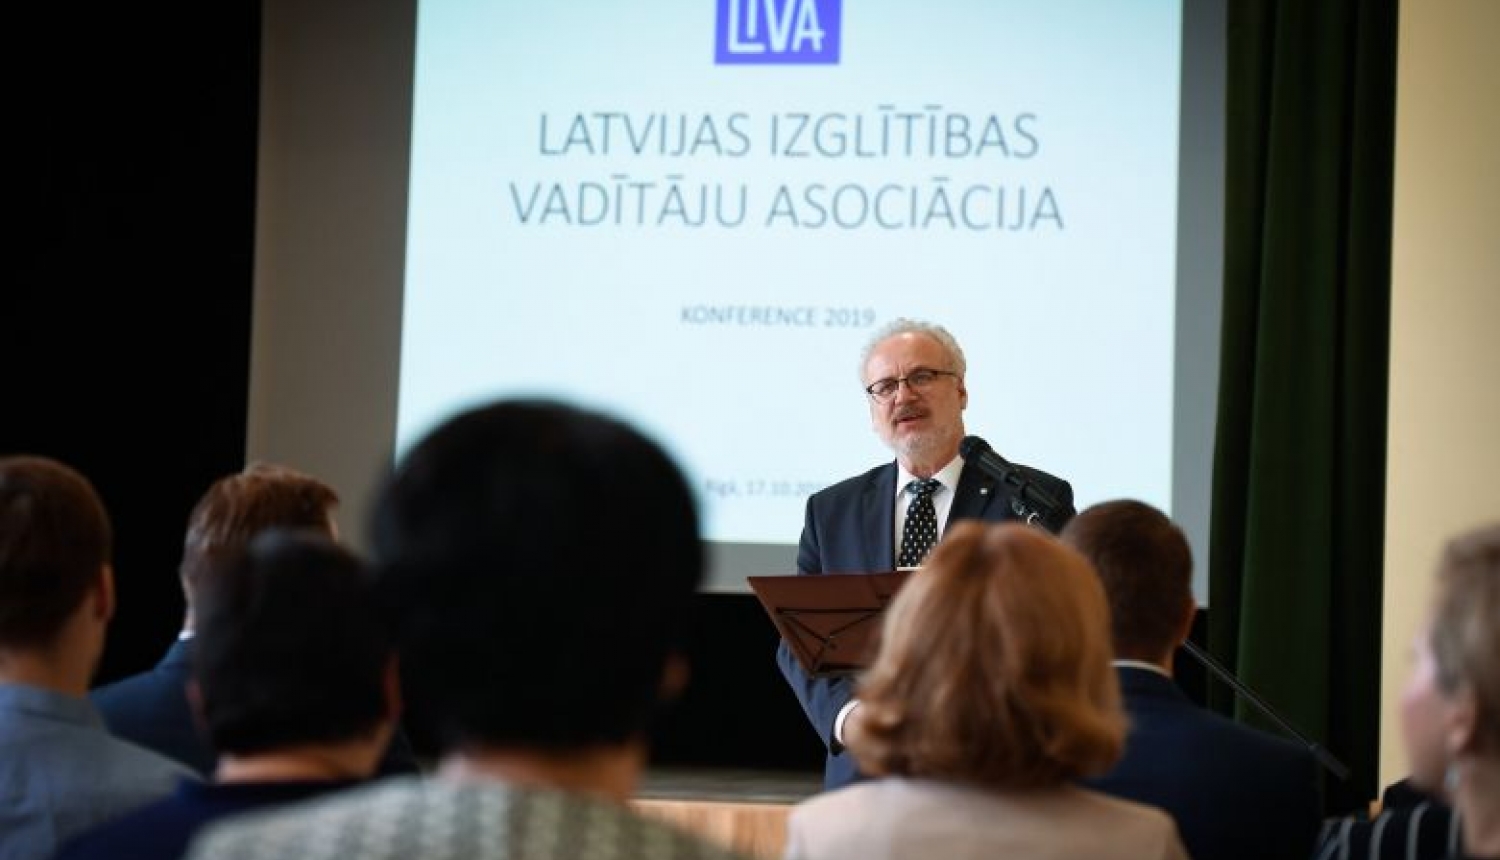 Valsts prezidenta Egila Levita uzruna Latvijas izglītības vadītāju asociācijas konferences atklāšanā